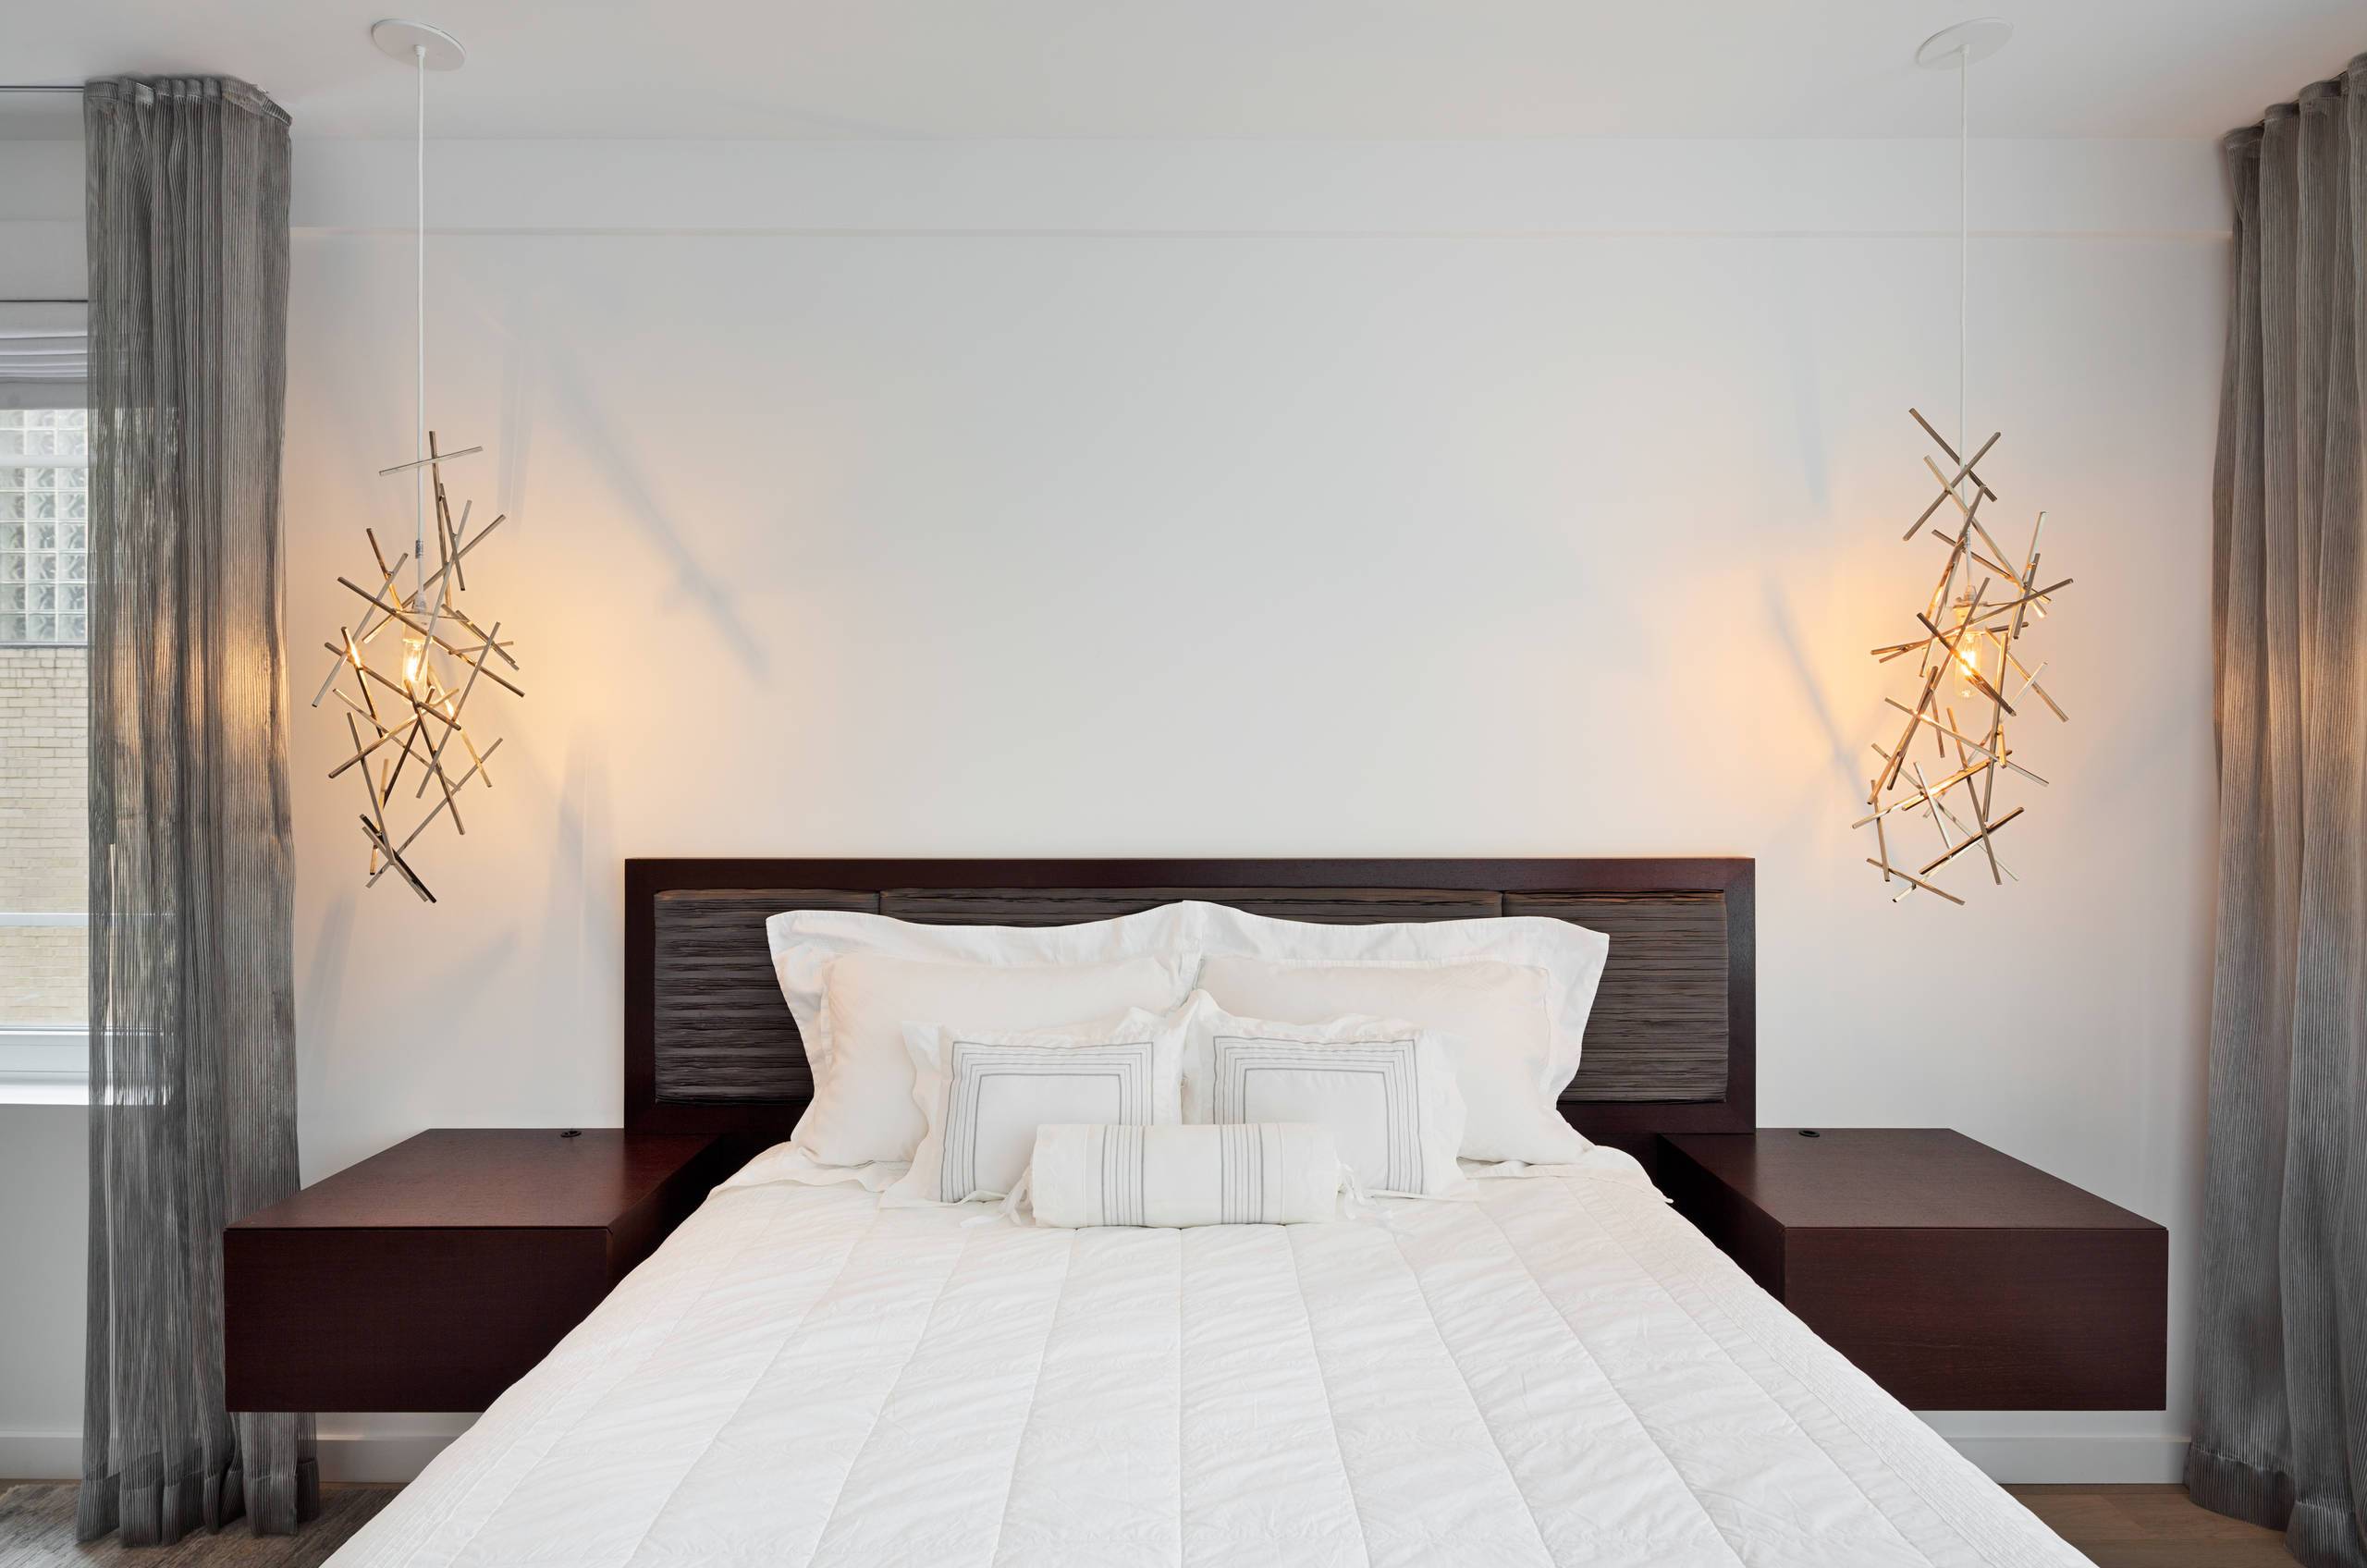 Прикроватные светильники для спальни на тумбочке, настенный прикроватный гибкий светодиодный светильник